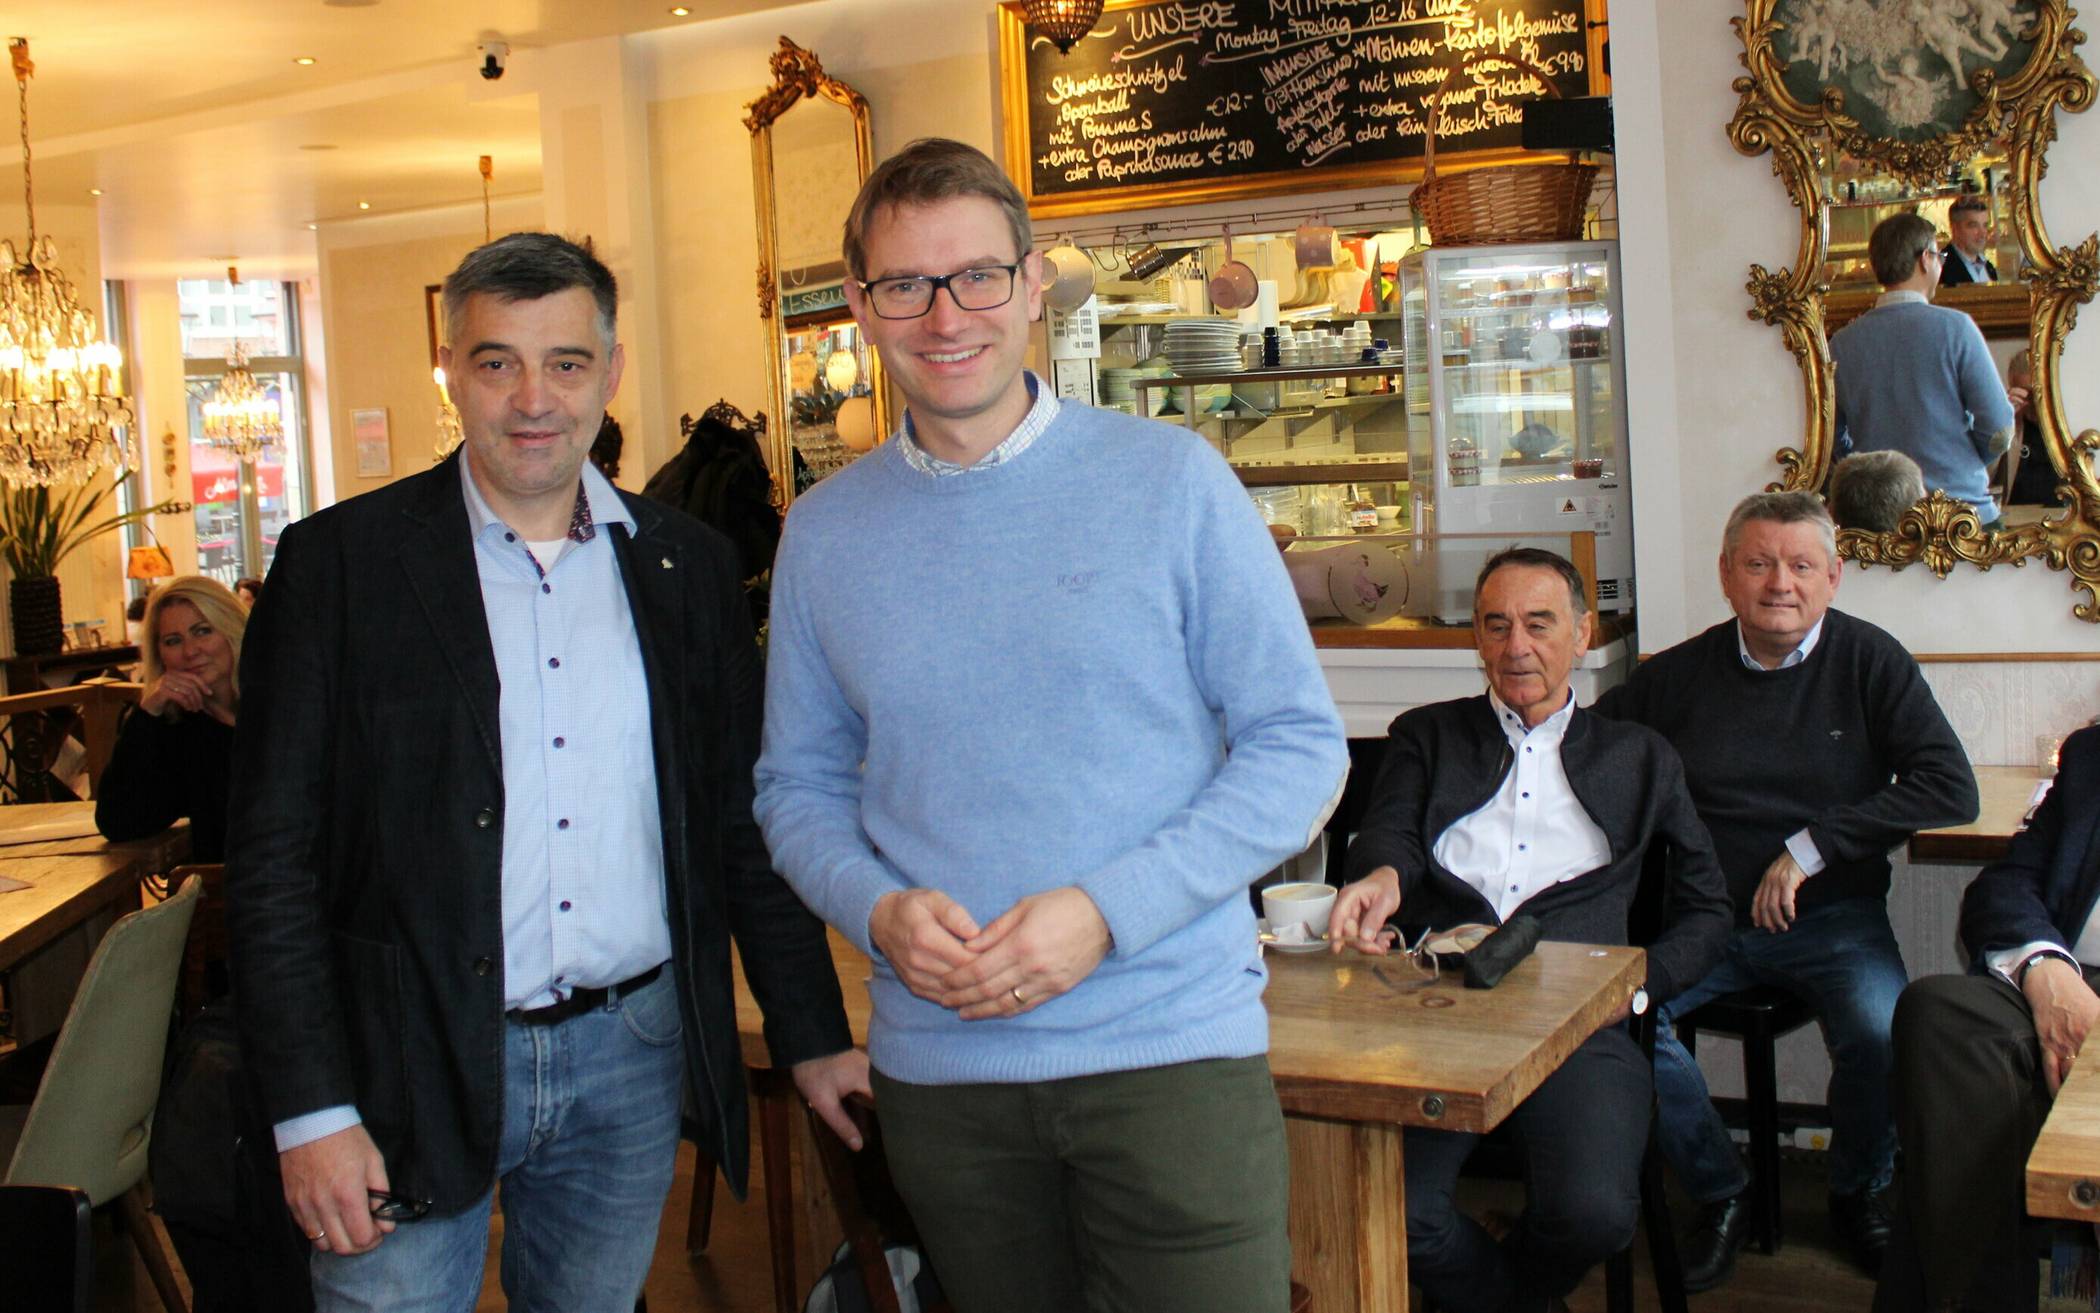  Der CDU-Vorsitzende Jan-Philipp Büchler (vorne, rechts) hatte zur Premiere des „Politischen Frühstücks“ im Café Schwan den Urban Climate Architect Peter Küsters (vorne, links) eingeladen.  